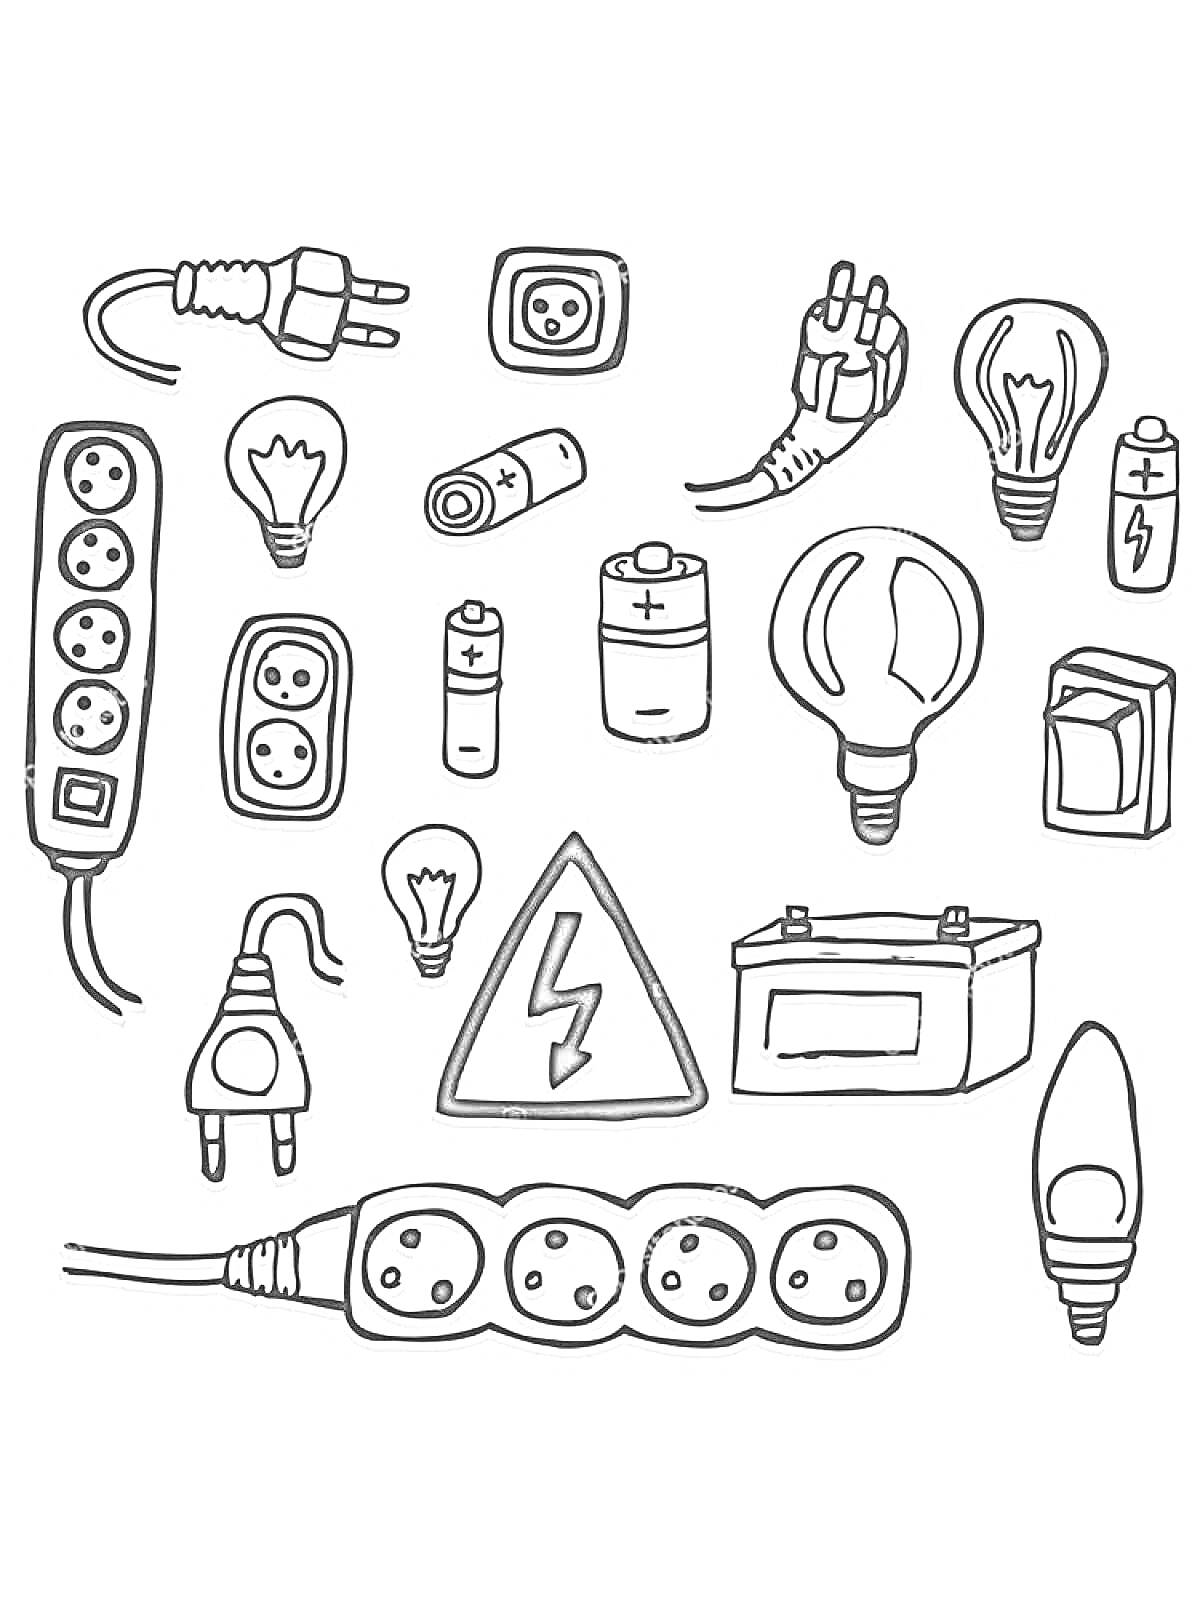 Набор электрических элементов: удлинители, розетки, лампочки, батарейки, штепсели, электрический знак, предохранитель, электрическая лампа